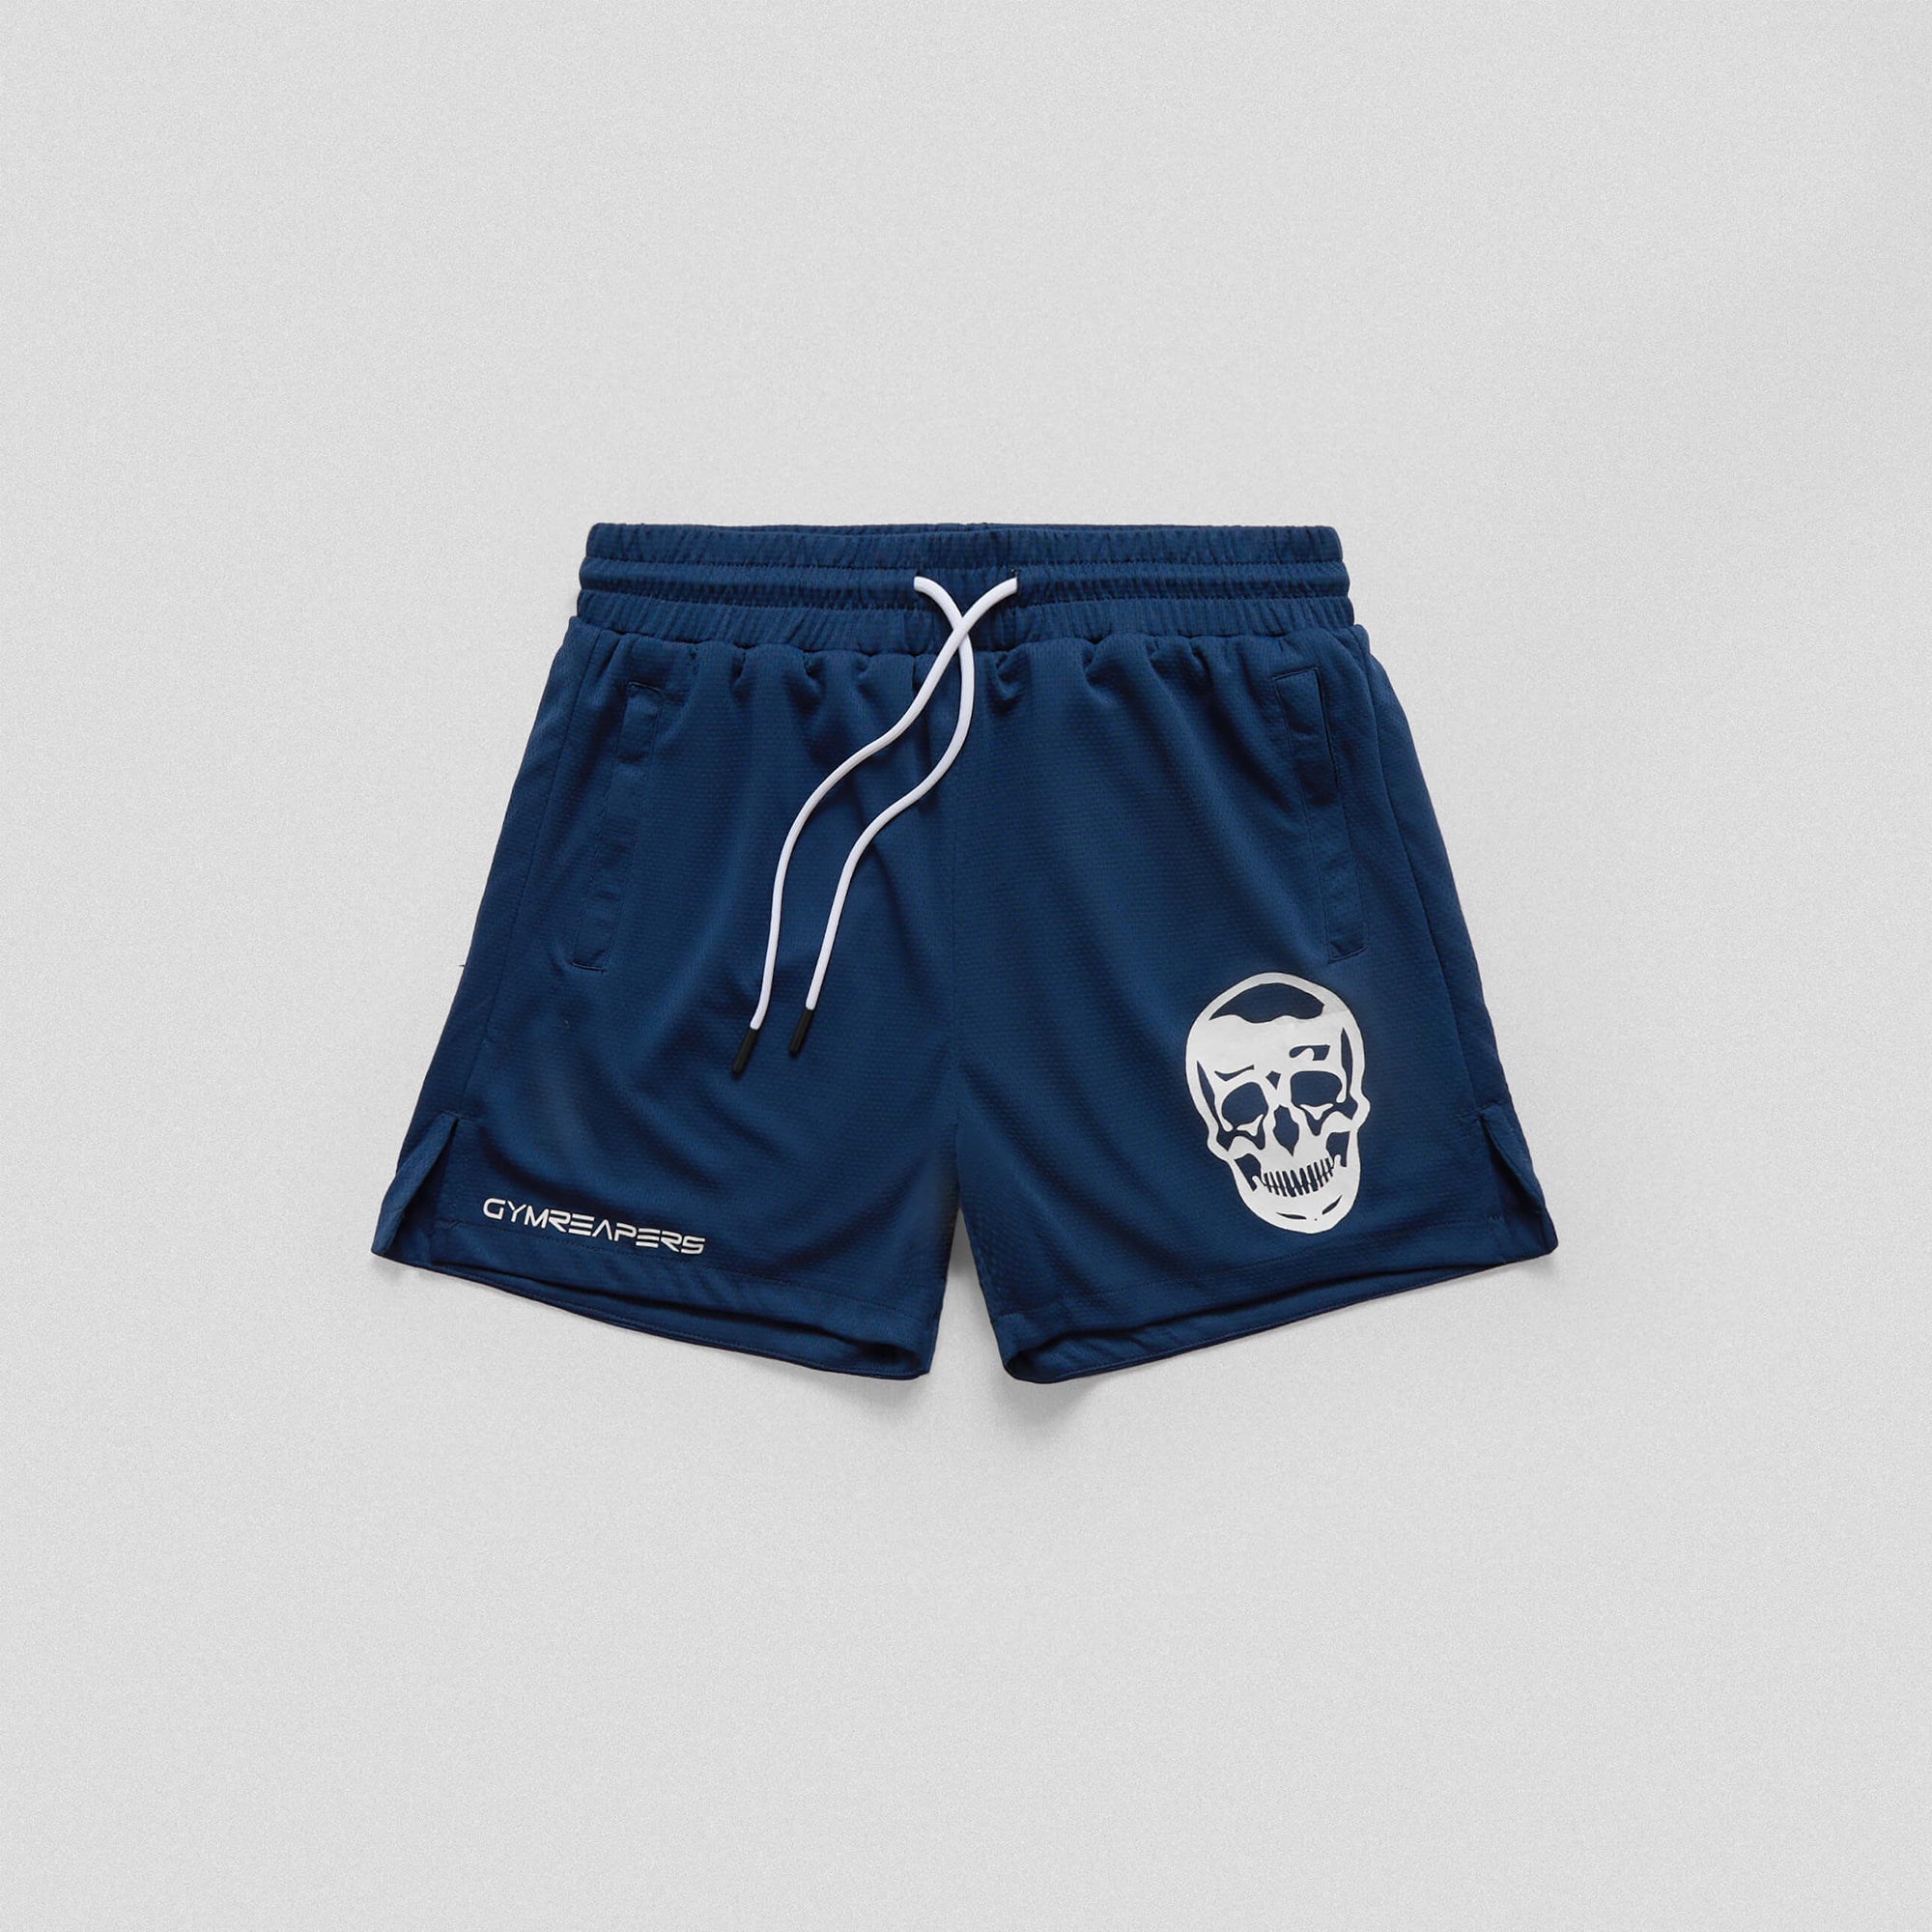 mesh shorts navy front